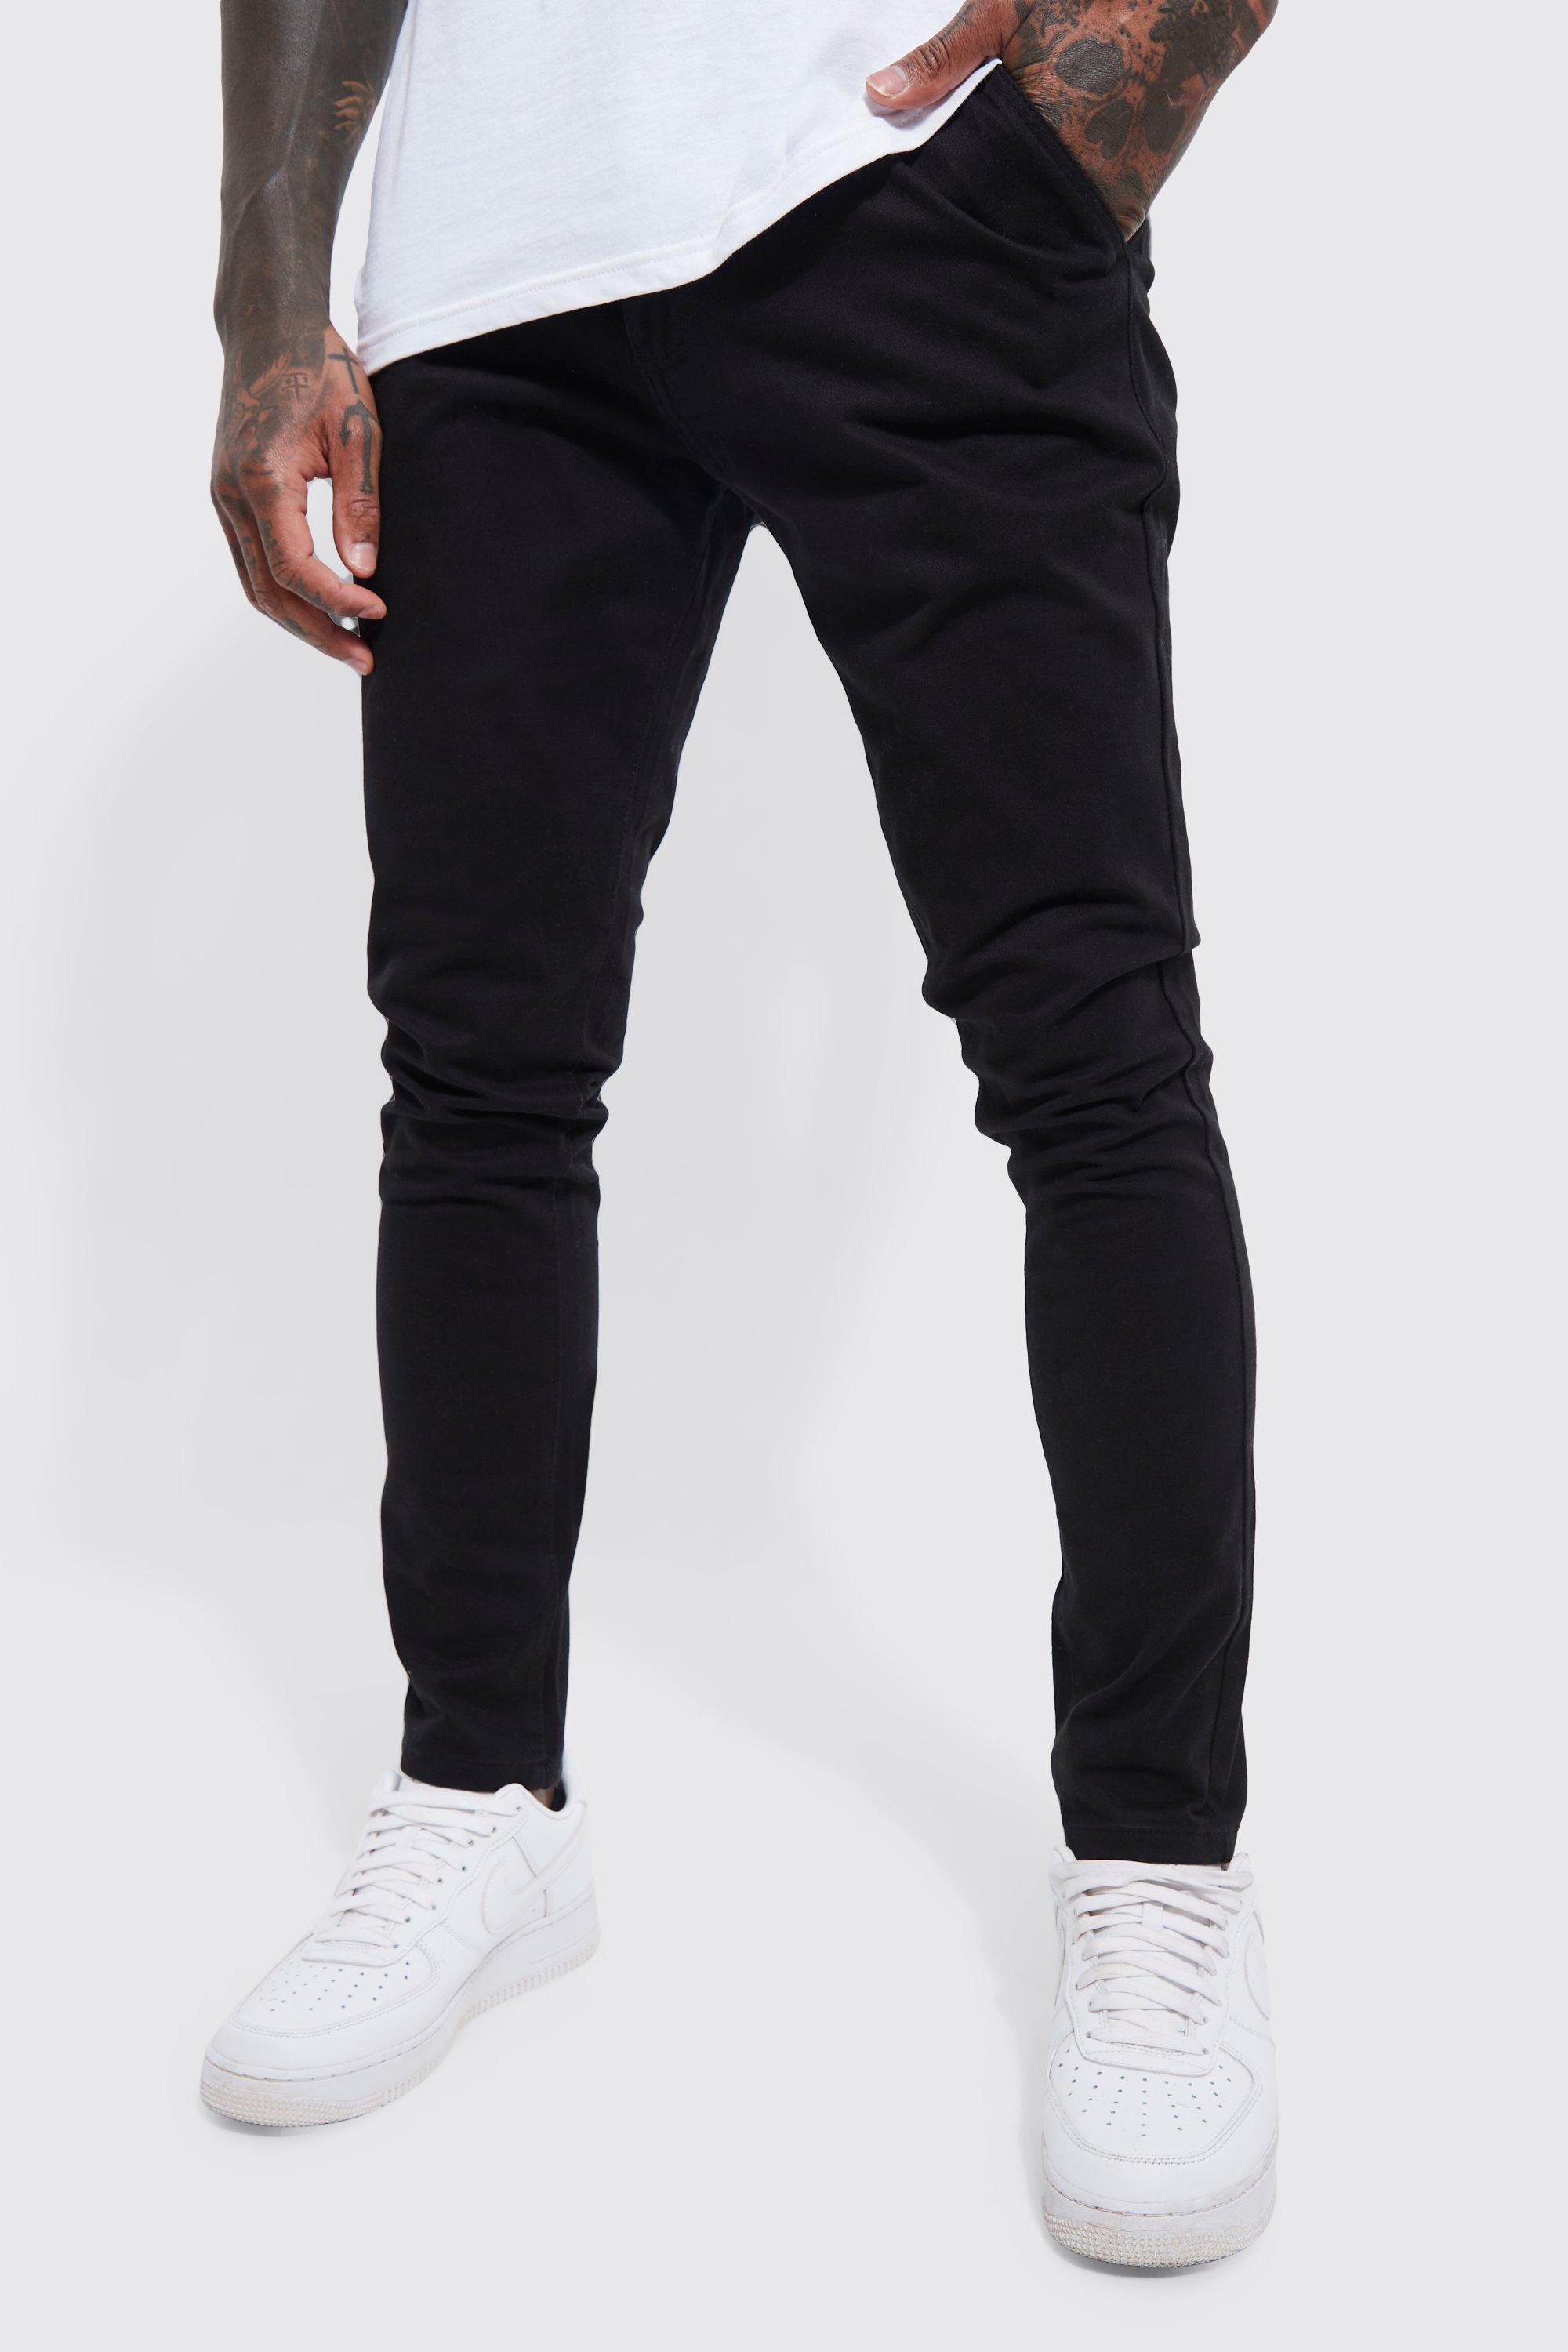 pantalon chino skinny homme - noir - 32r, noir